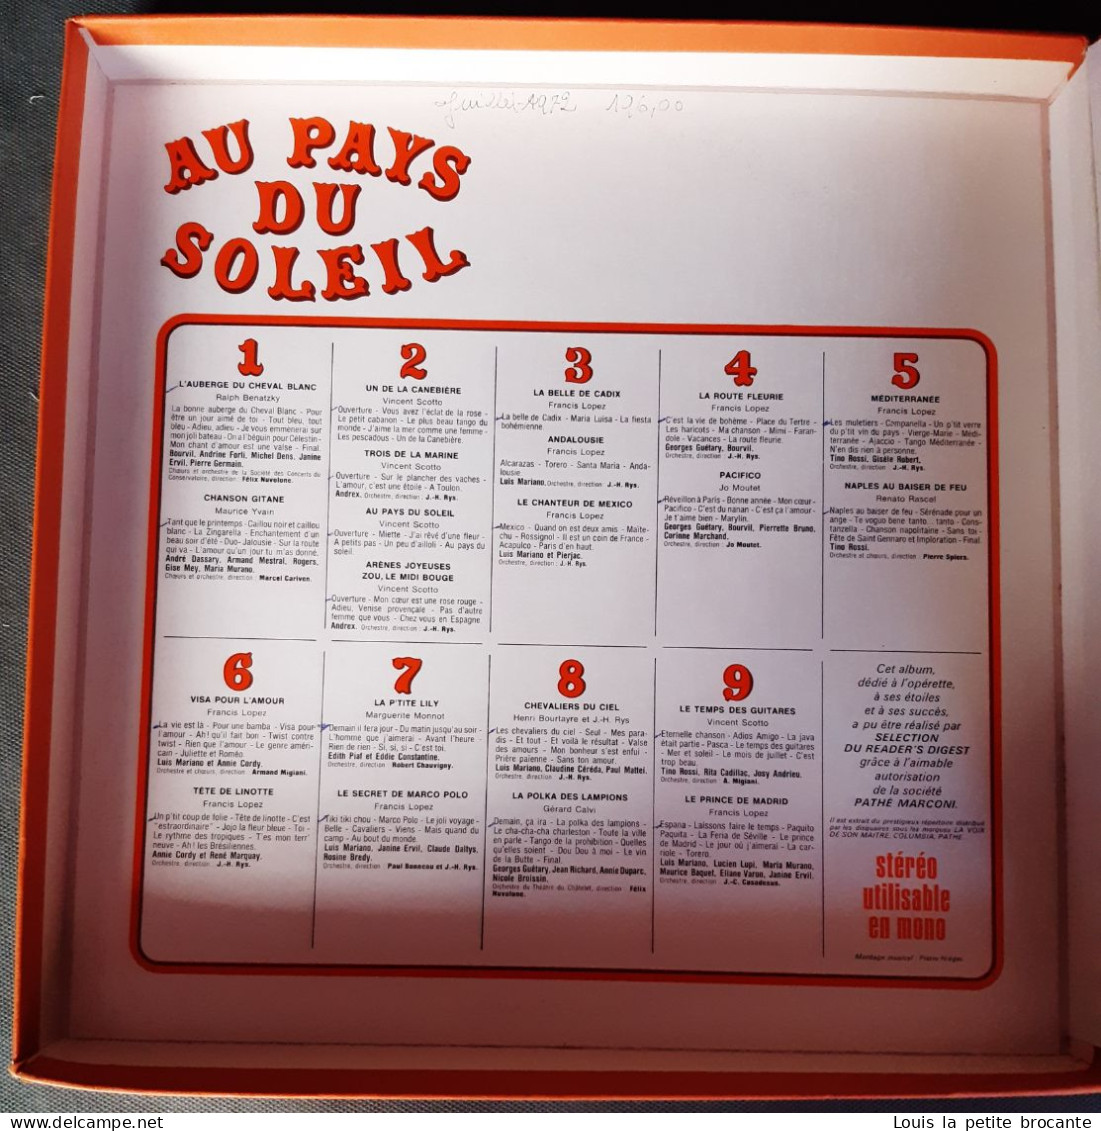 Coffret De 9 Disques Vinyles, AU PAYS DU SOLEIL, L'Operette Ses étoiles Ses Succès, PATHE MARCONI - EMI. - Vollständige Sammlungen